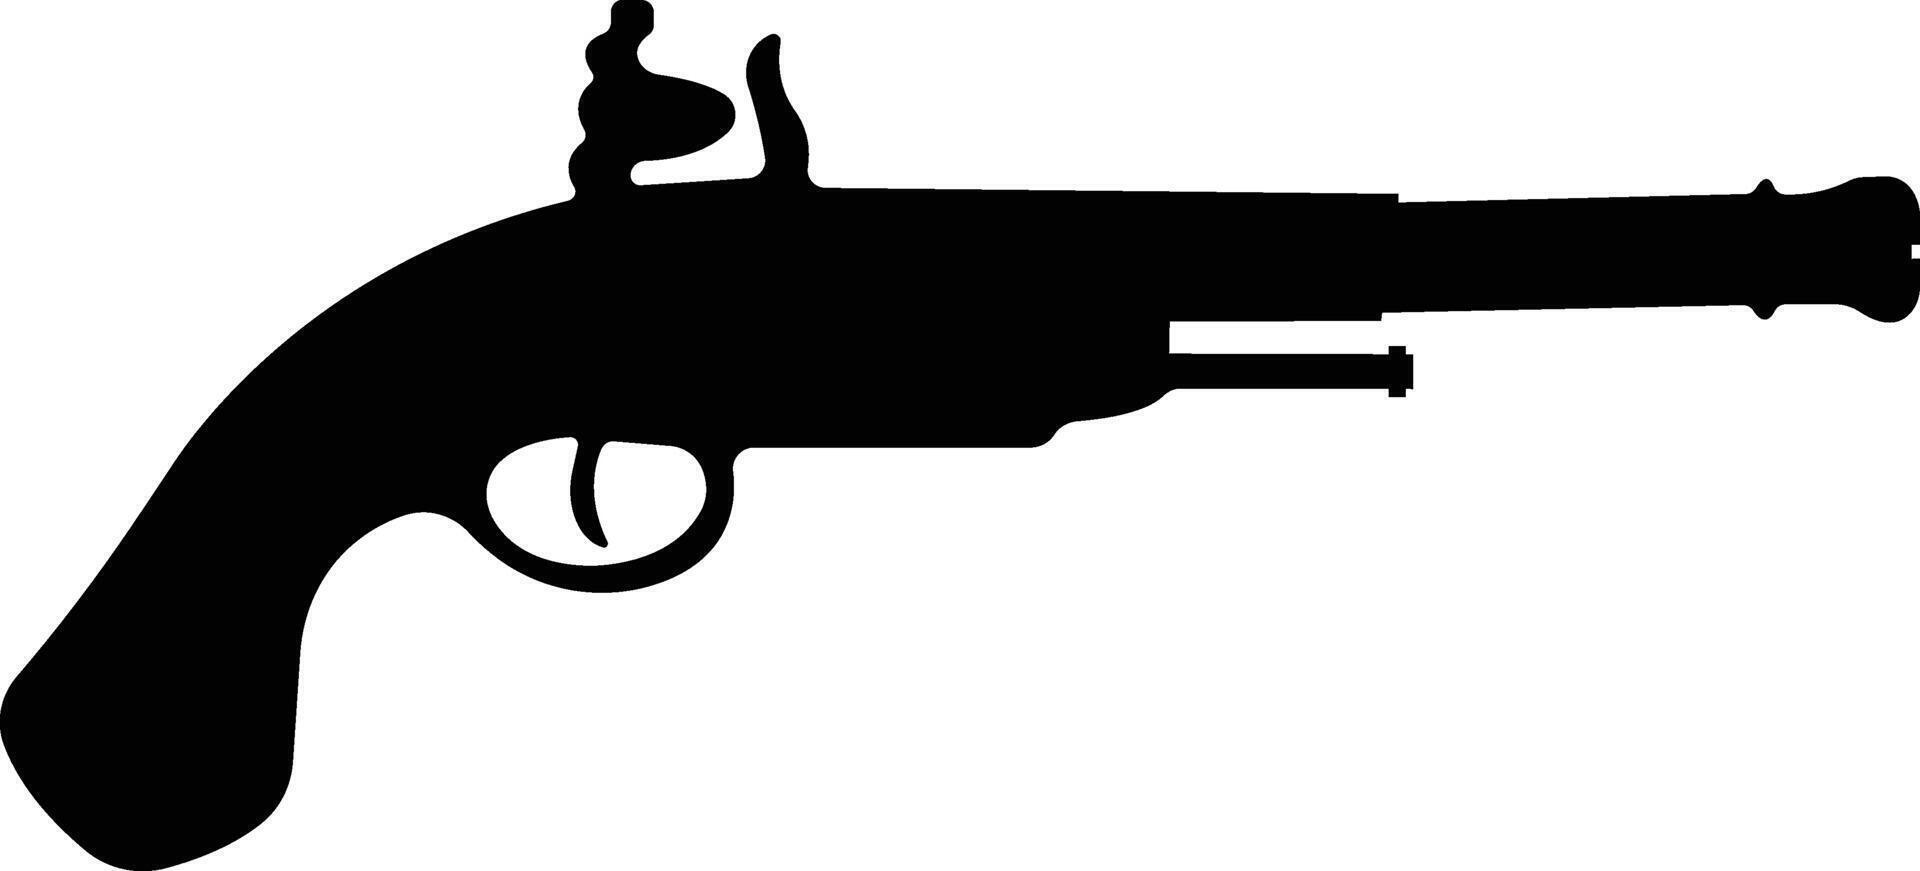 pistola icono en plano desde Ejército y guerra aislado en símbolo vector para aplicaciones y sitio web. pistola, rifle, revólver para salvaje Oeste concepto, policía oficial munición o militar arma.